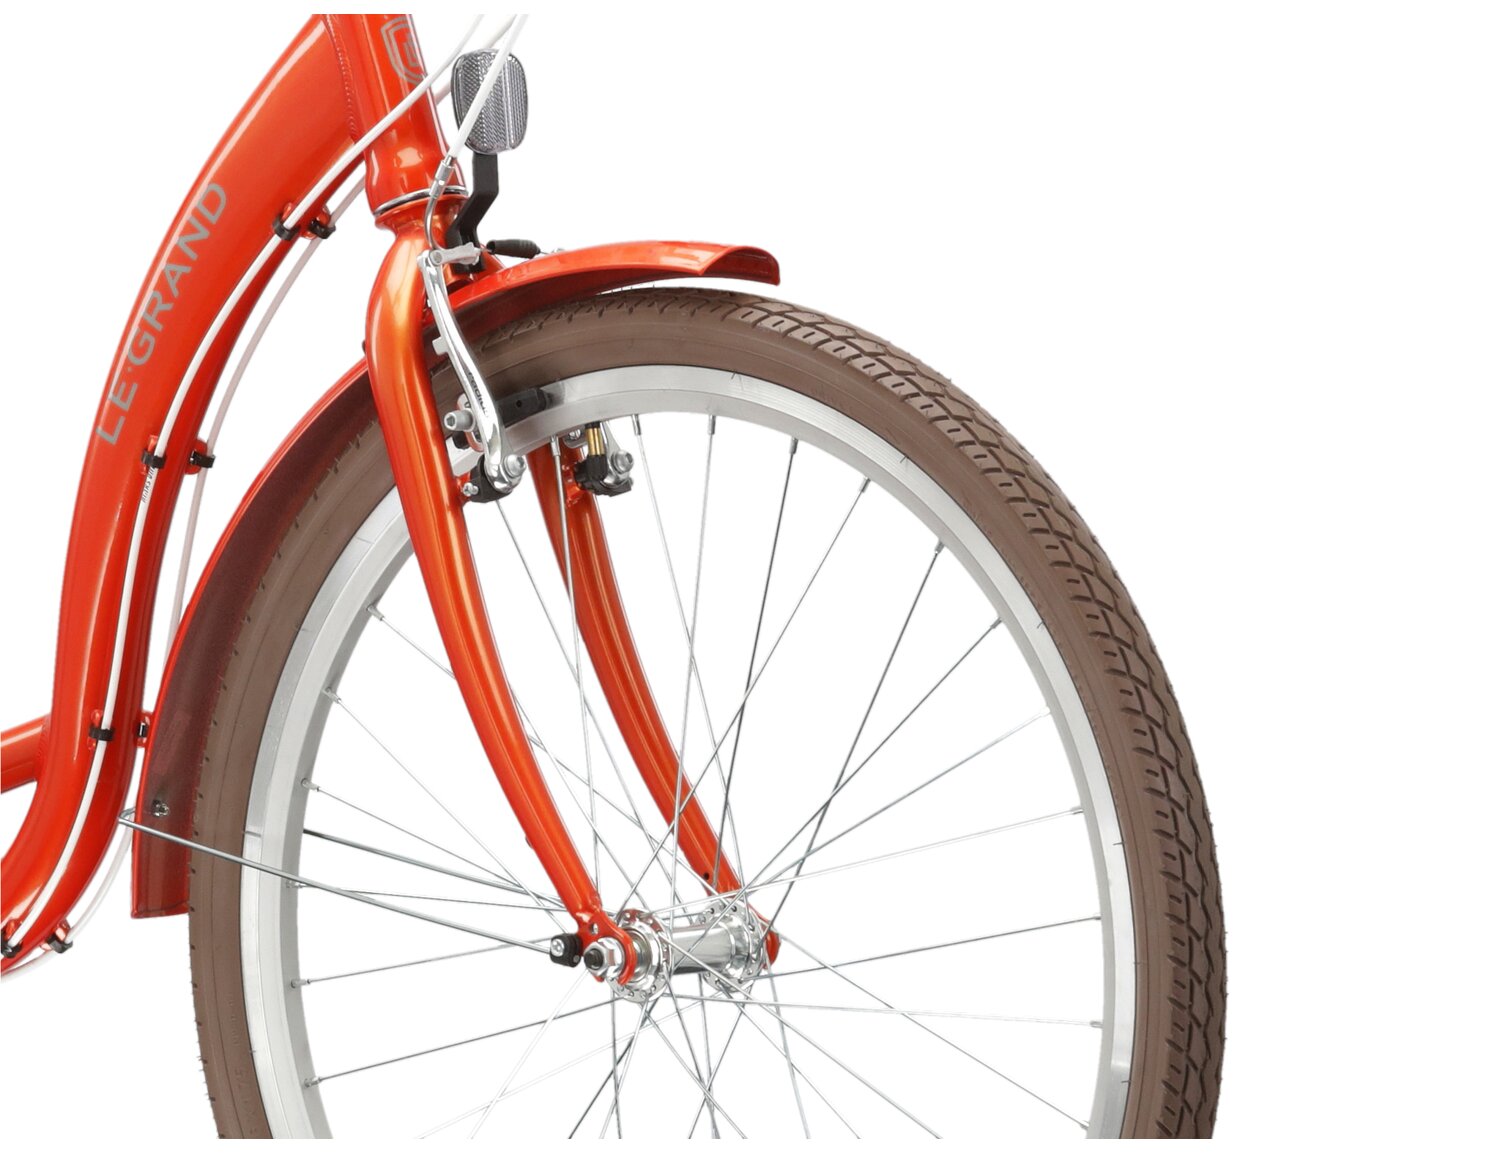 Aluminowa rama, sztywny stalowy widelec oraz opony o szerokości 1,75 cala w rowerze miejskim Le Grand Lille 1.0 